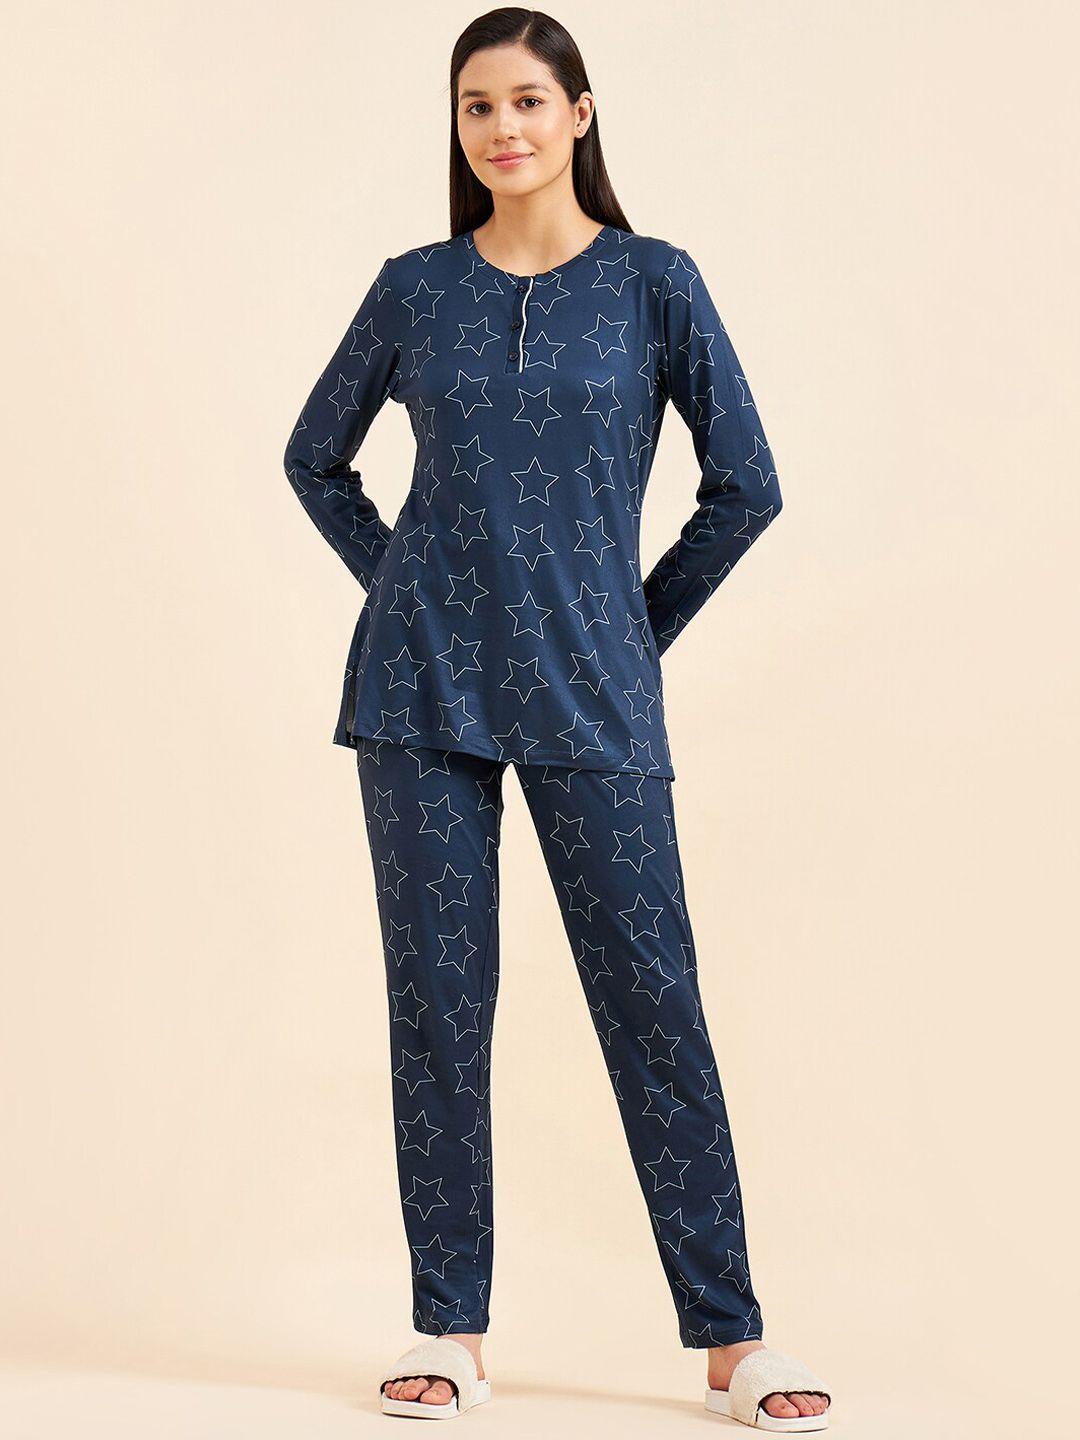 Sweet Dreams Printed Top And Pyjama Night Suit